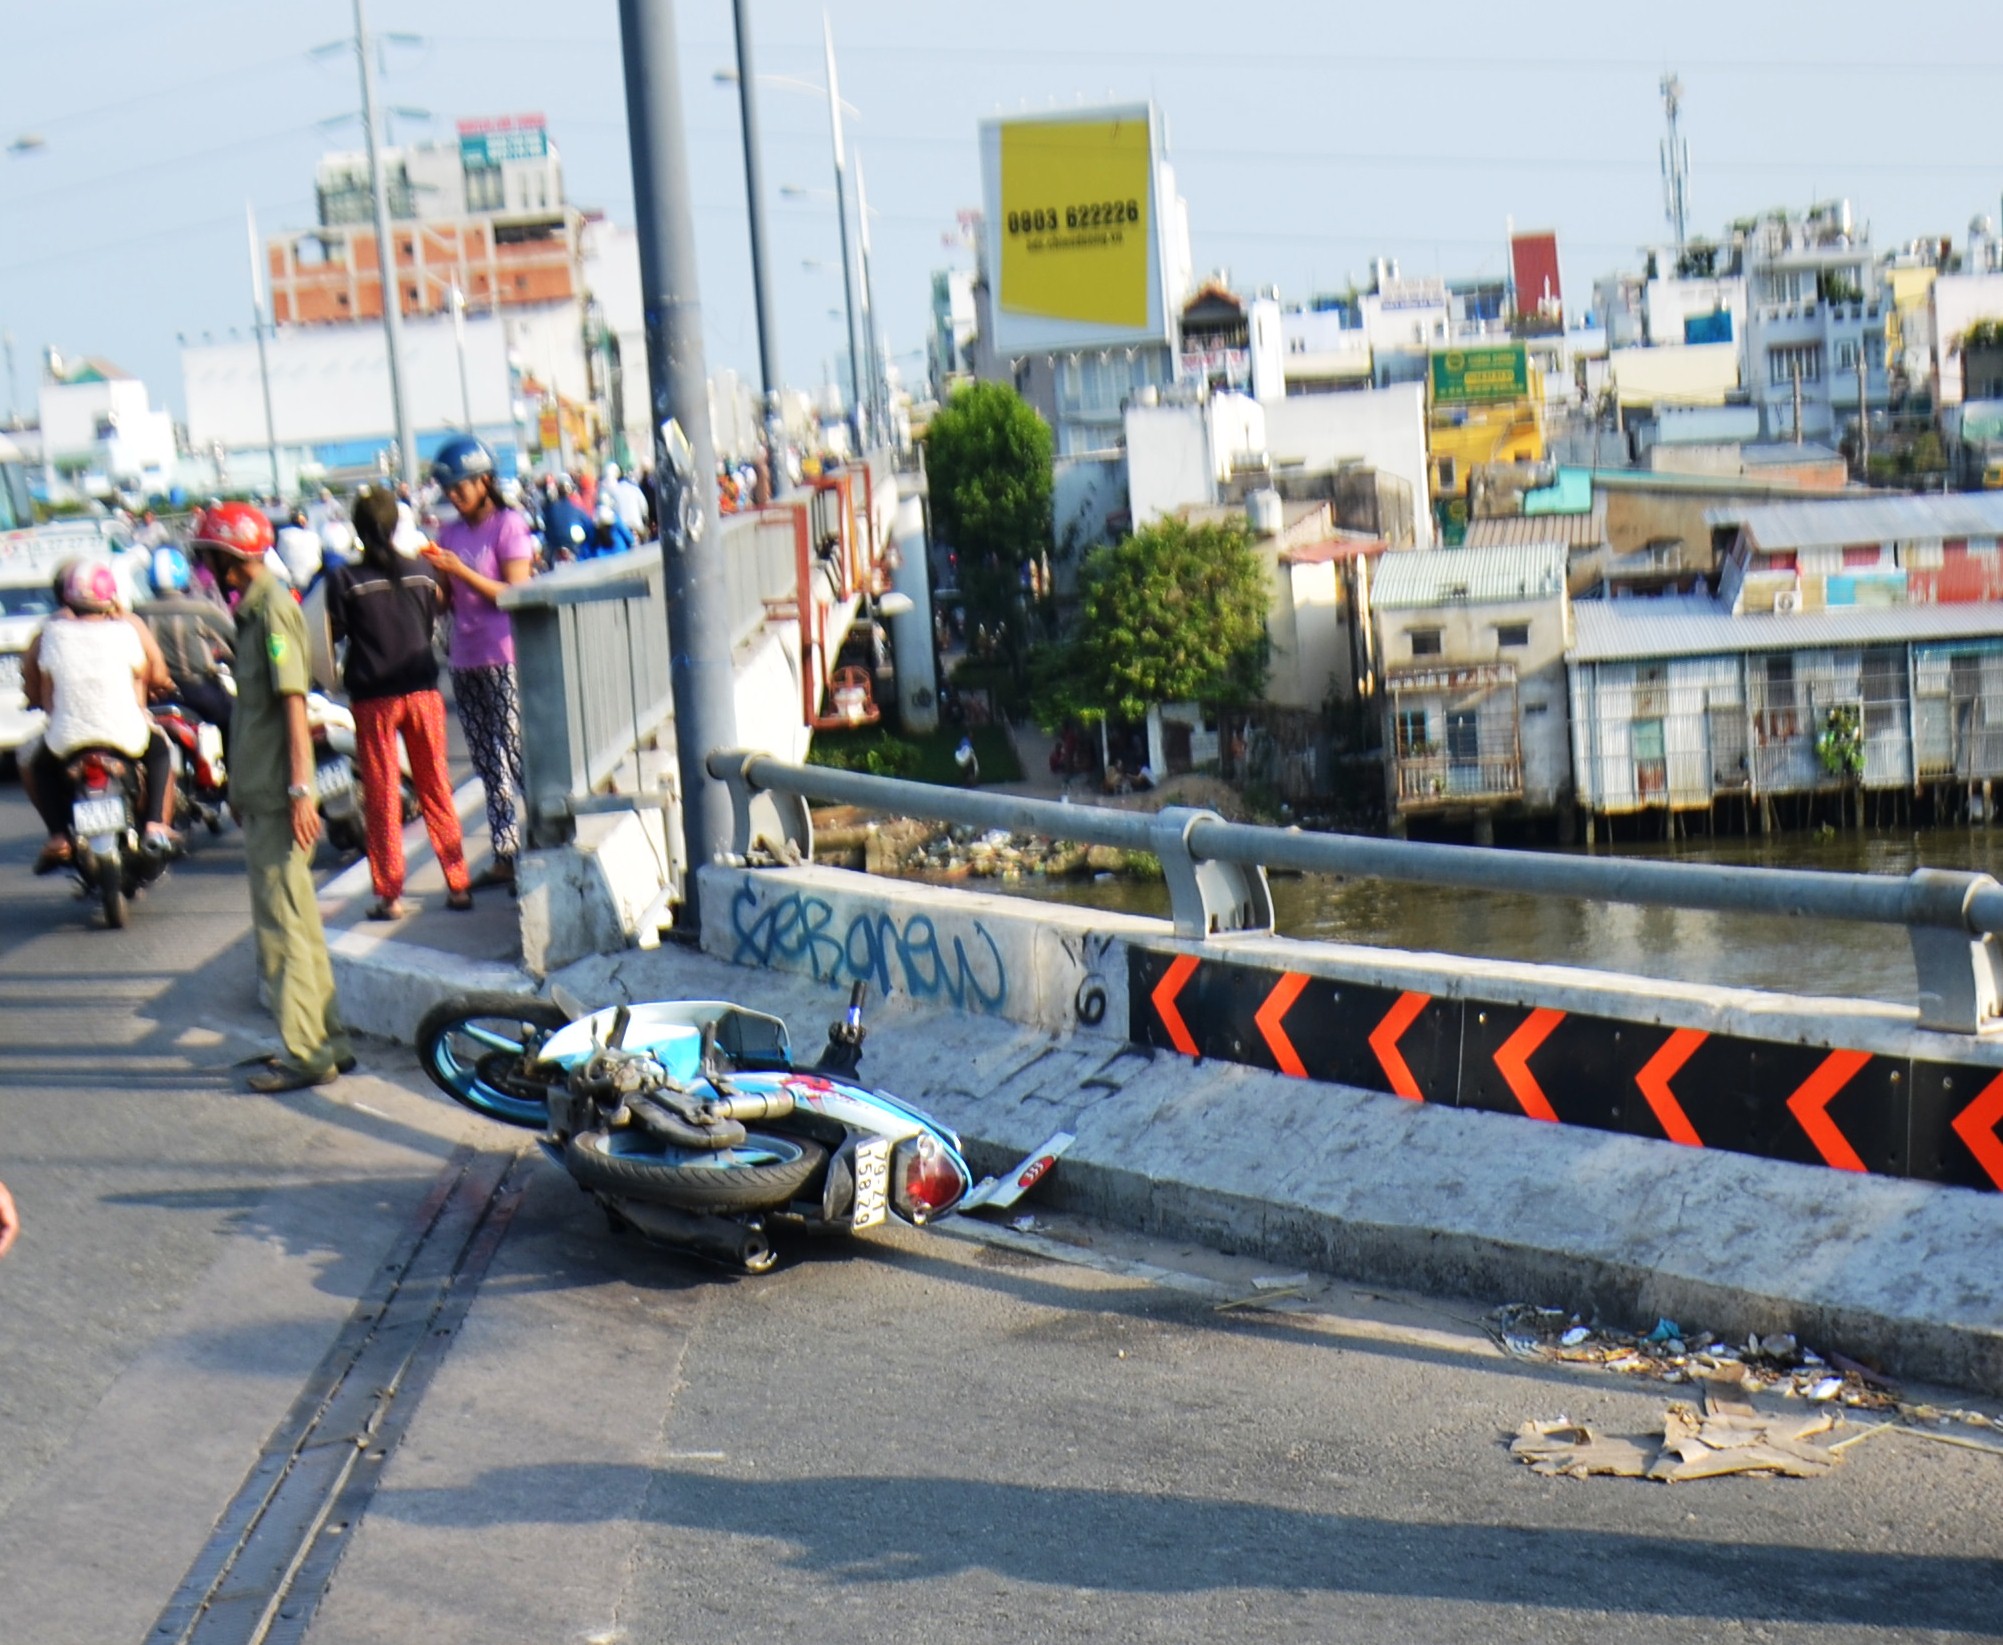 
Chiếc xe máy của nạn nhân nằm chỏng chơ trên cầu Nguyễn Văn Cừ
